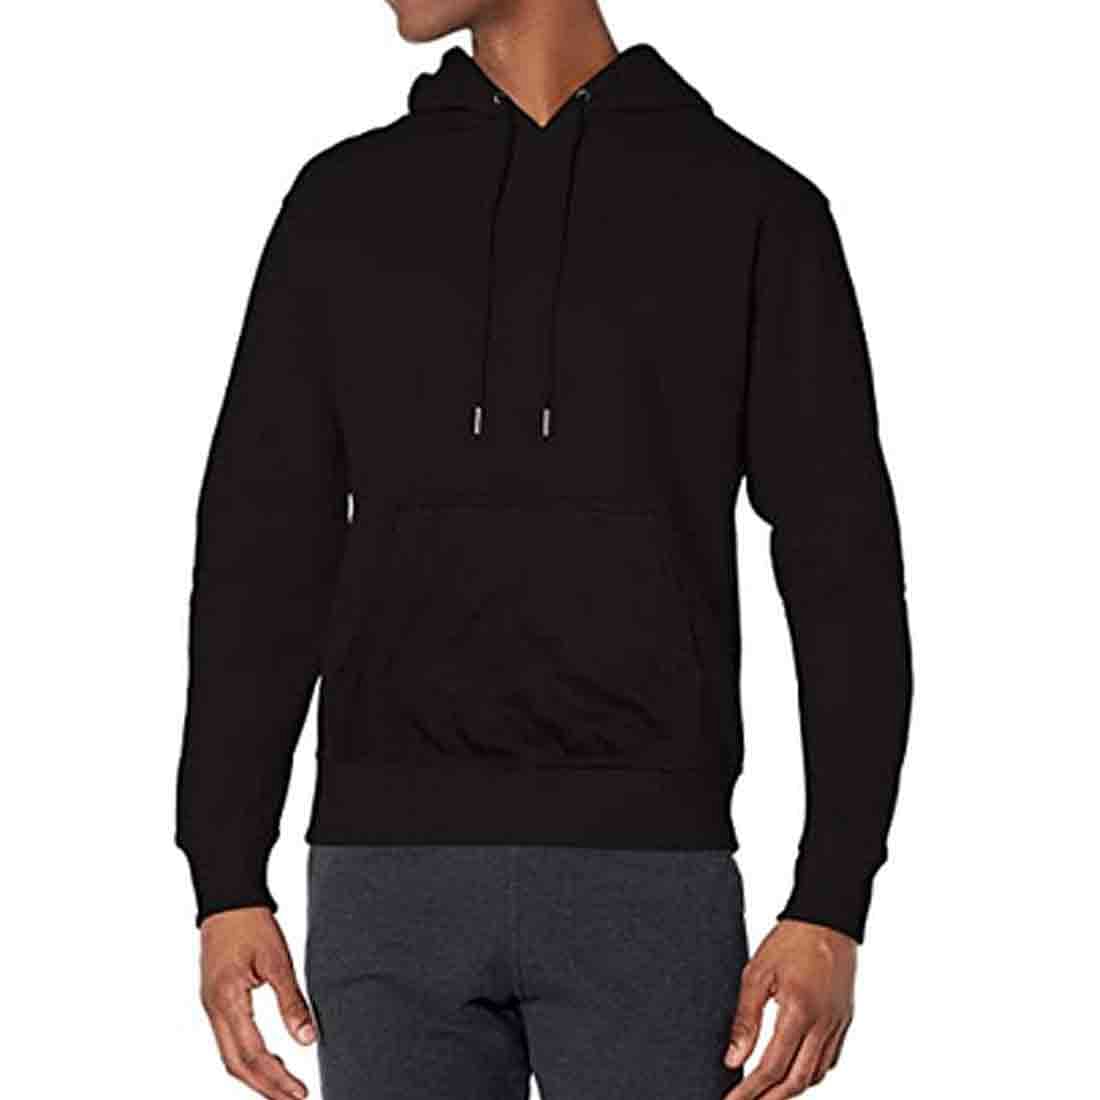 Nutcase Hoodie Stylish Jumper Sweatshirt Unisex ( Black ) - Creative Nutcase